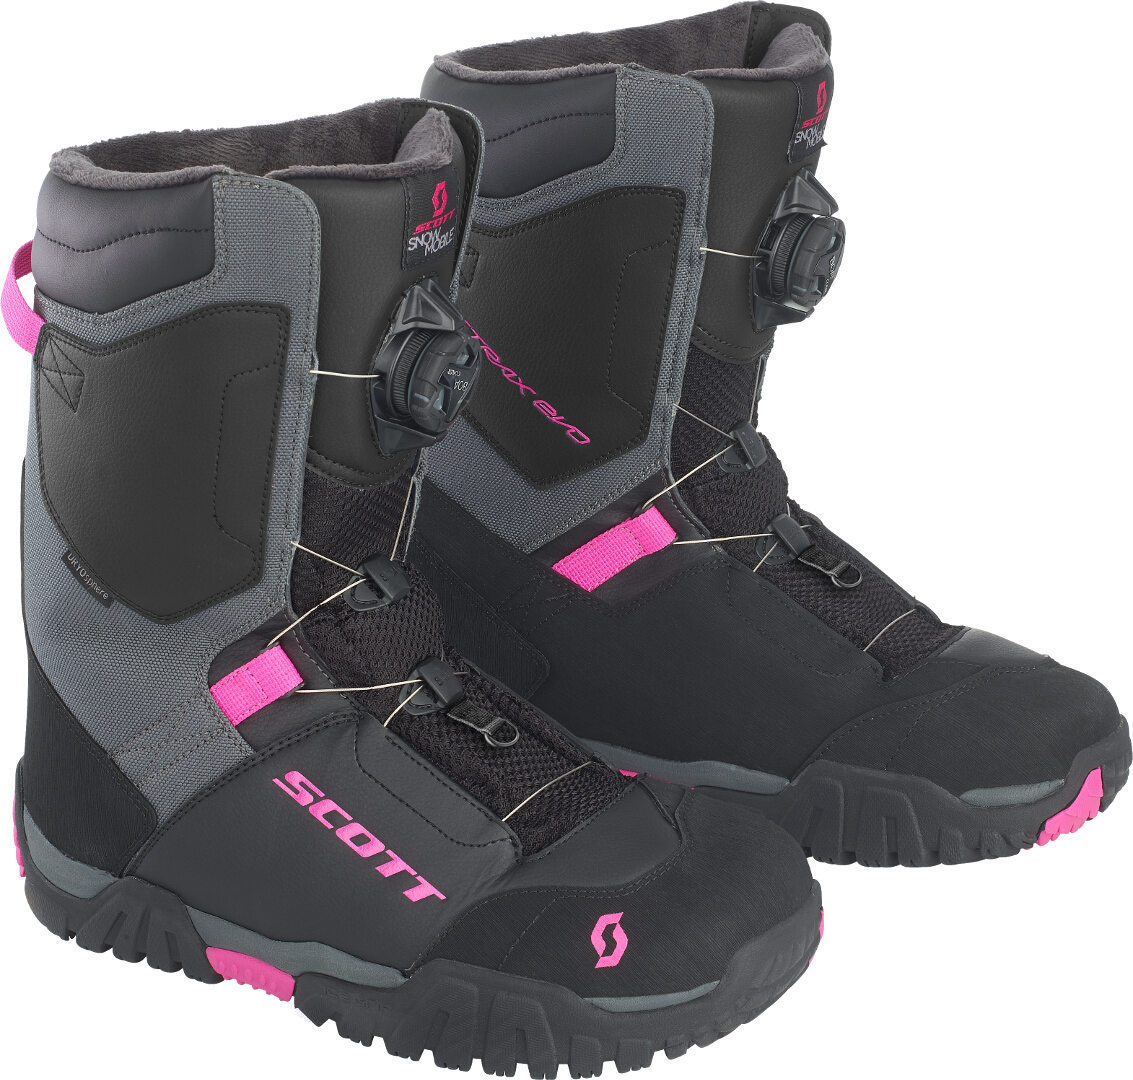 Scott X-Trax Evo SMB Snowmobile Ladies Boots, black-pink, Size 41 for Women, black-pink, Size 41 for Women